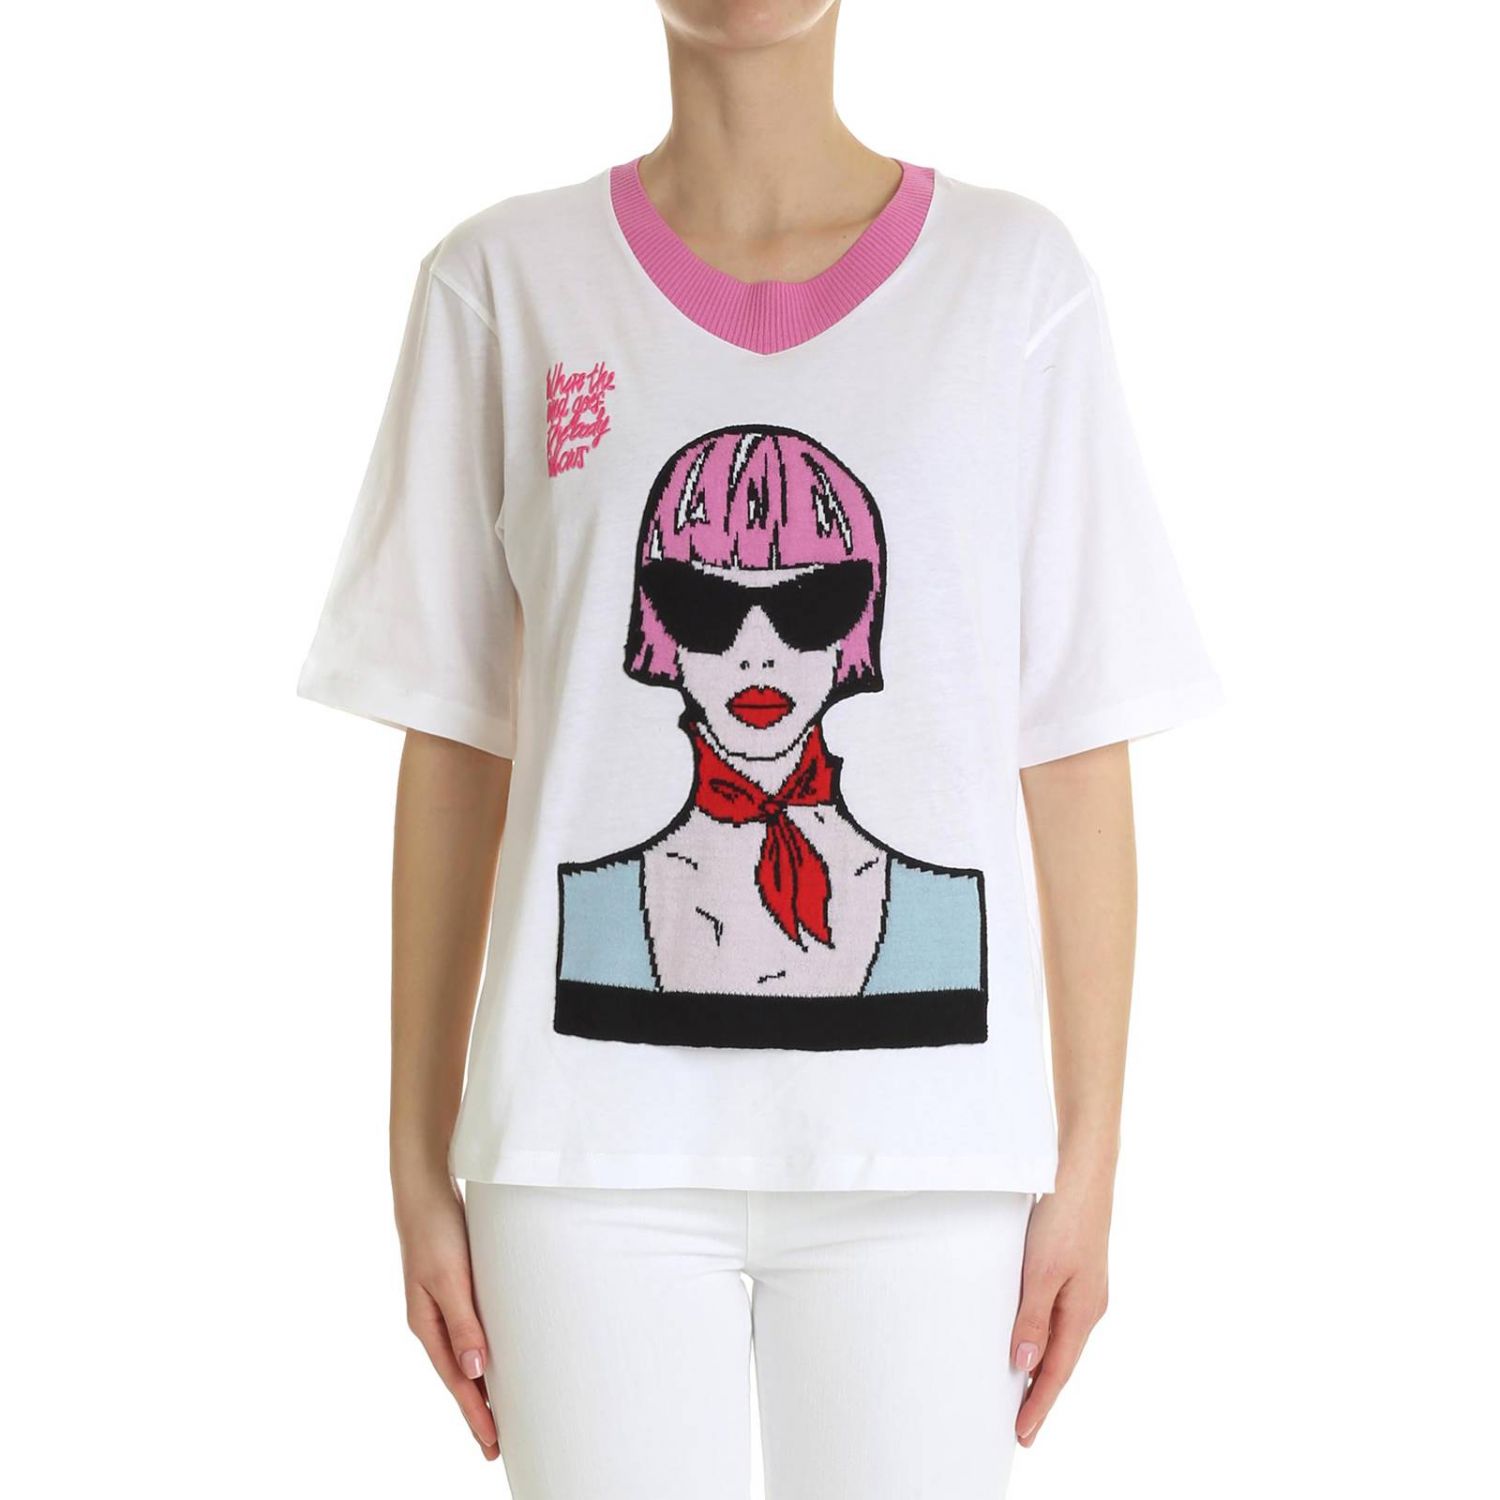 Ermanno Scervino Outlet: T-shirt women | T-Shirt Ermanno Scervino Women ...